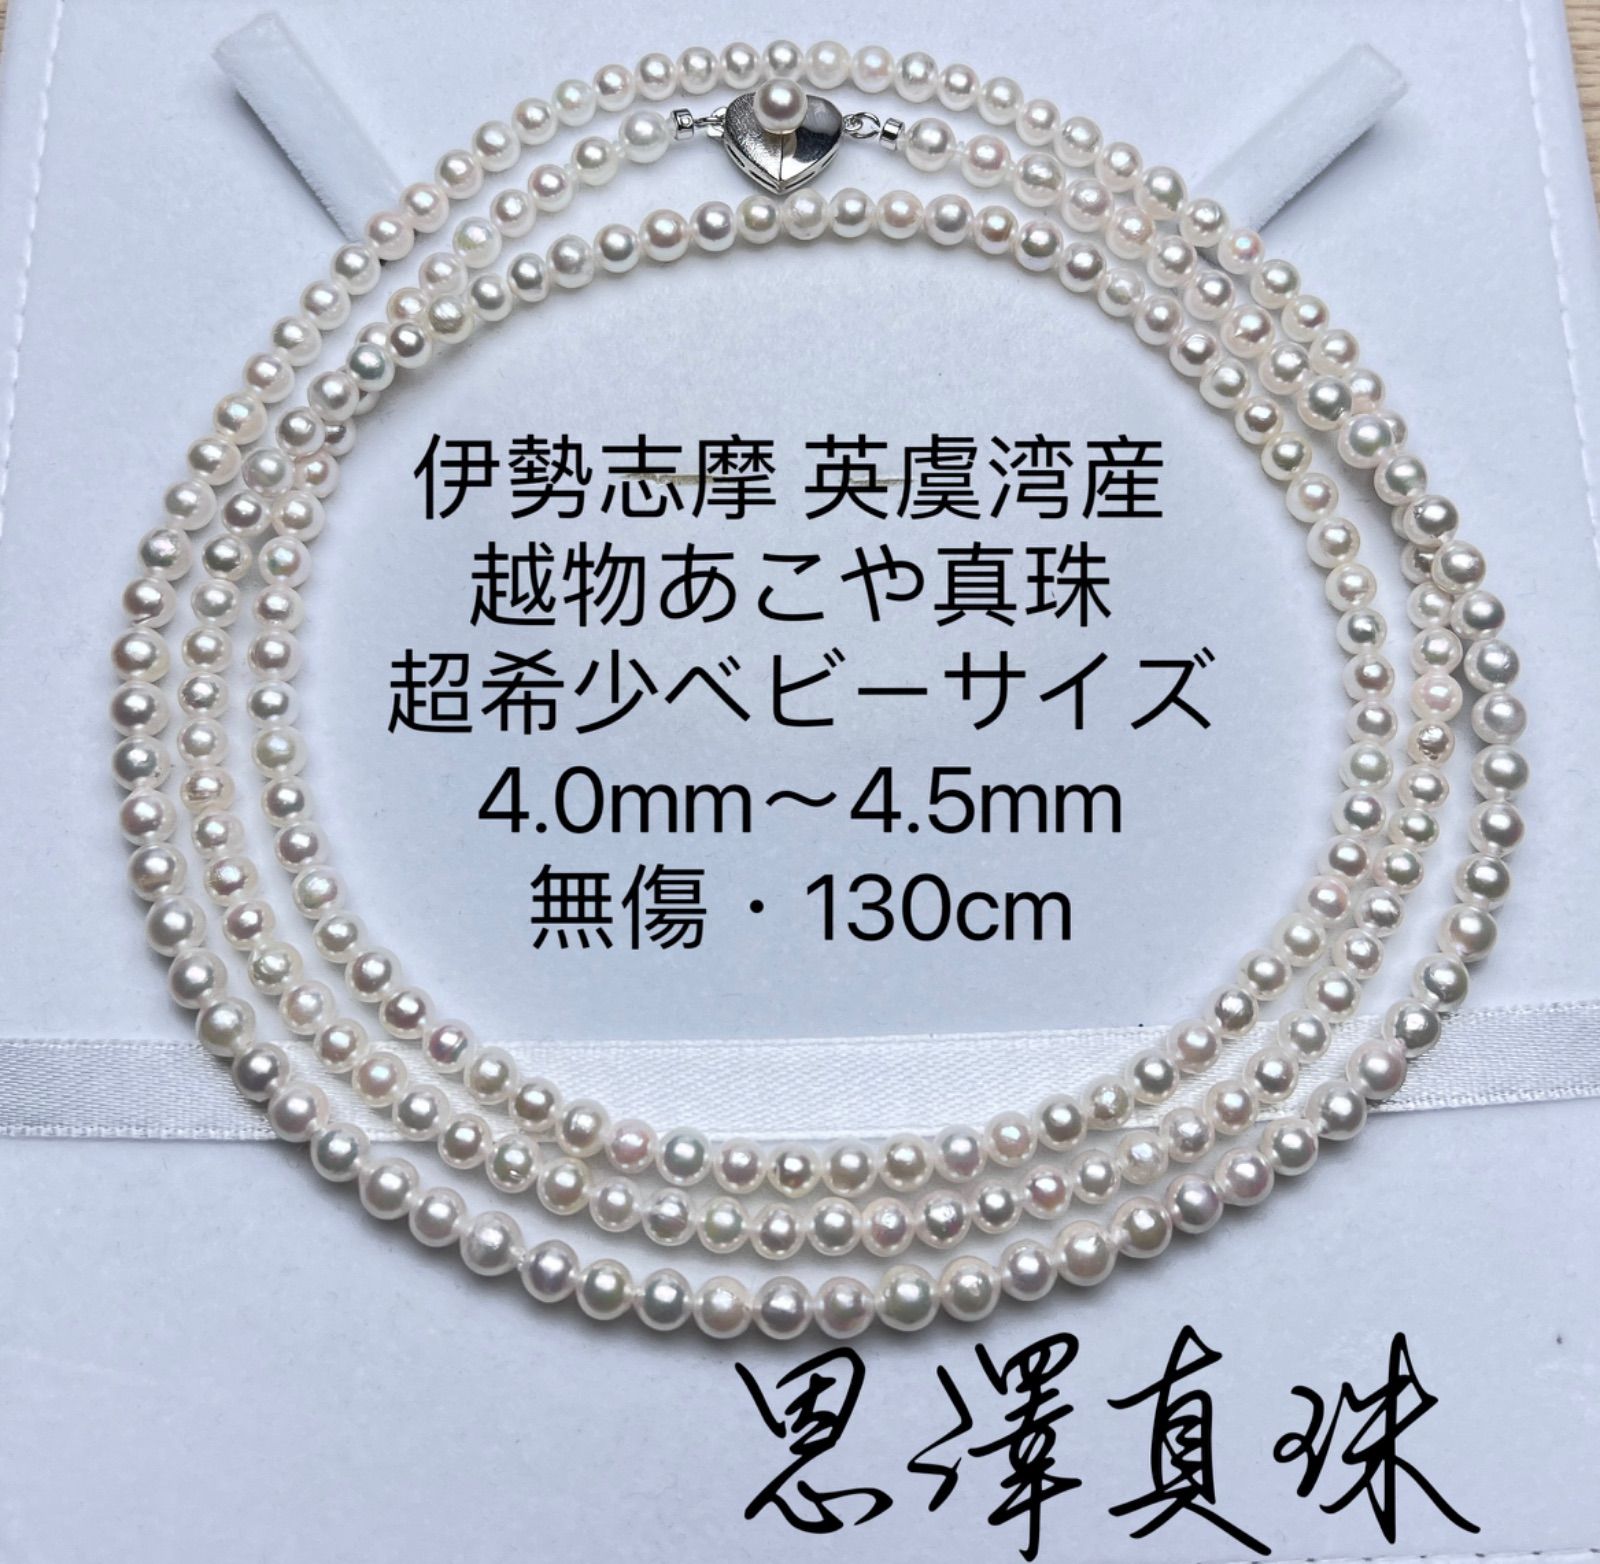 伊勢志摩英虞湾産越物あこや真珠 超稀少サイズ 4.0mm〜4.5mmホワイト 